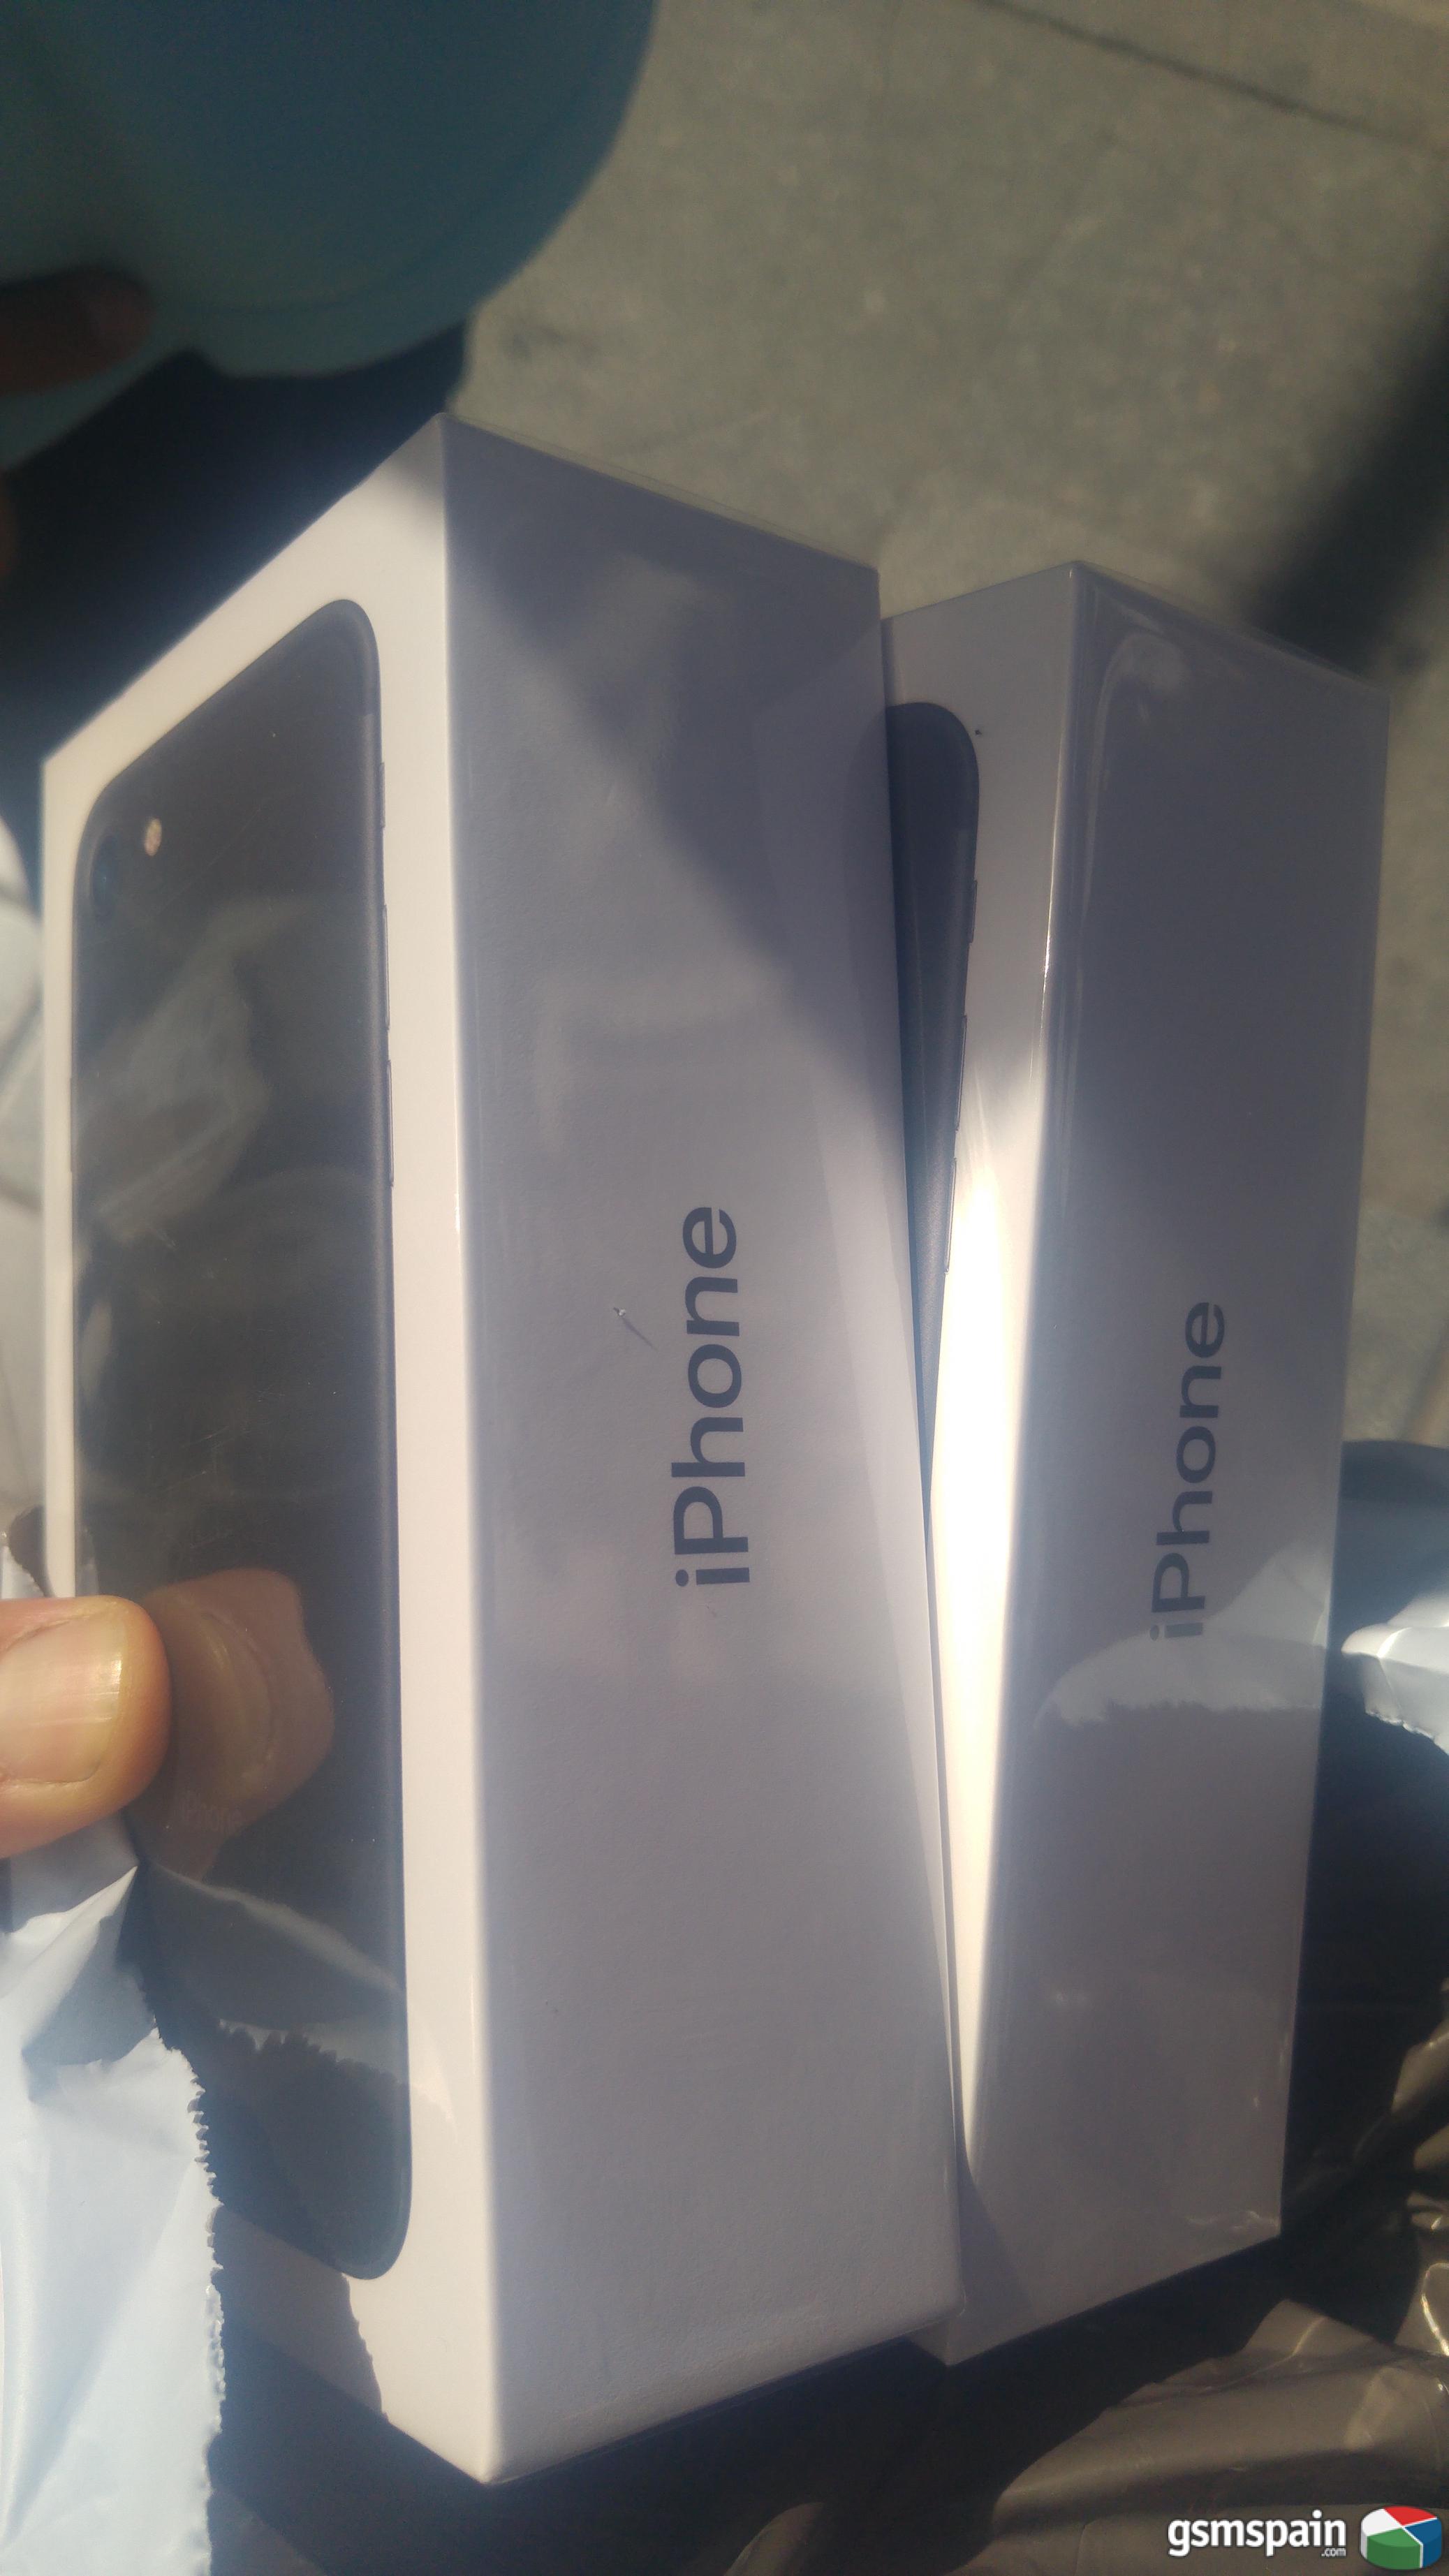 [VENDO] 2 x iPhone 7 32gb Black precintados, factura y libres